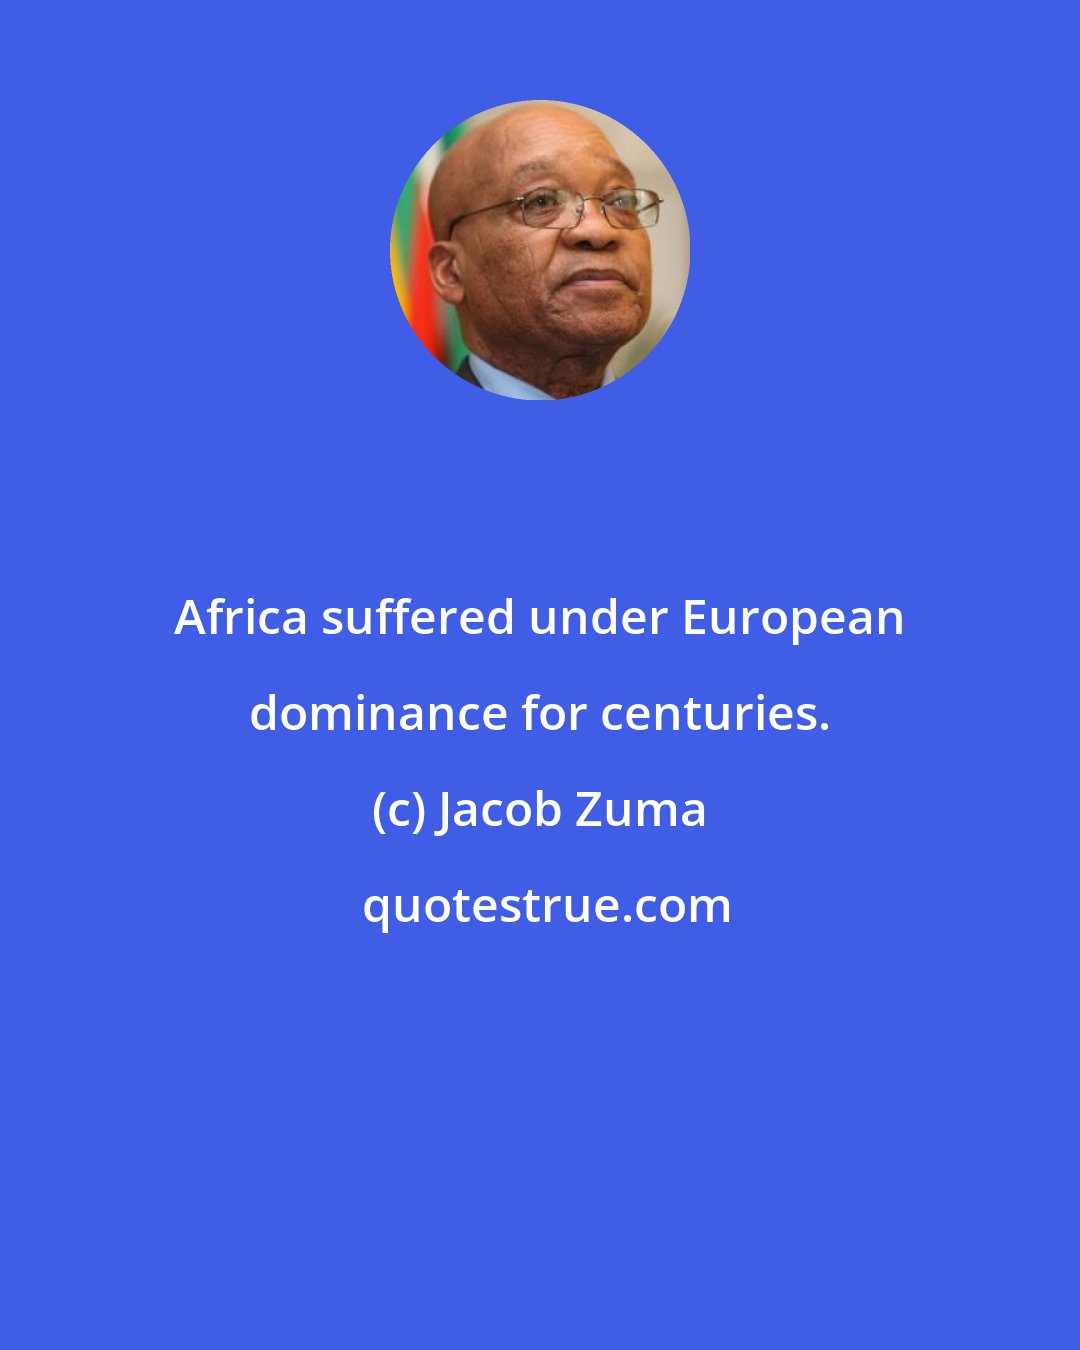 Jacob Zuma: Africa suffered under European dominance for centuries.